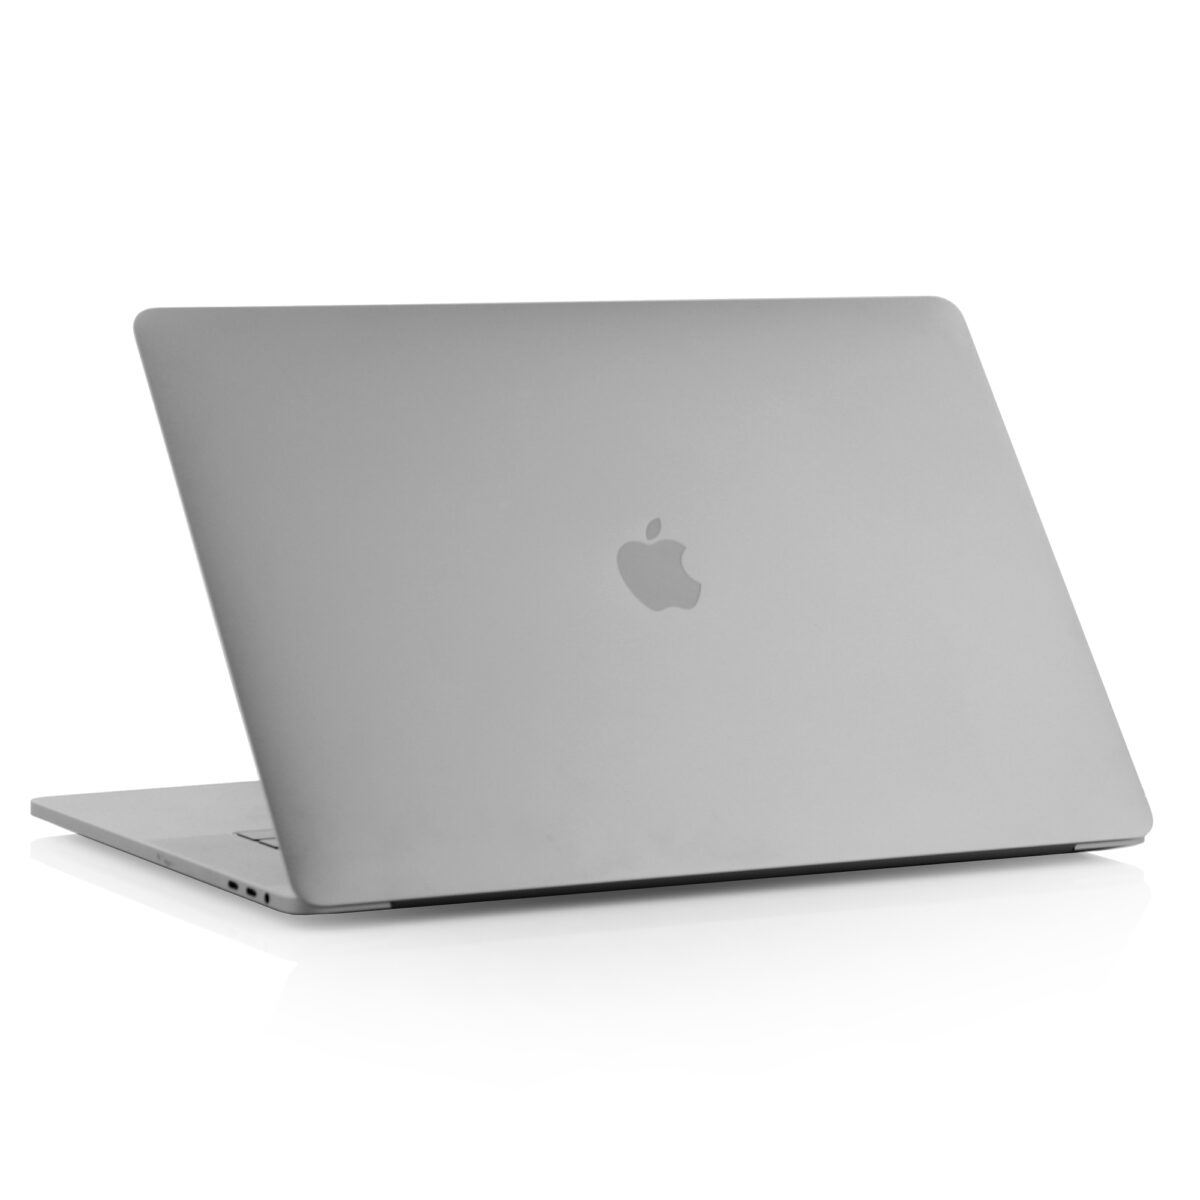 img MacBook Pro Retina 15 Inch 11045